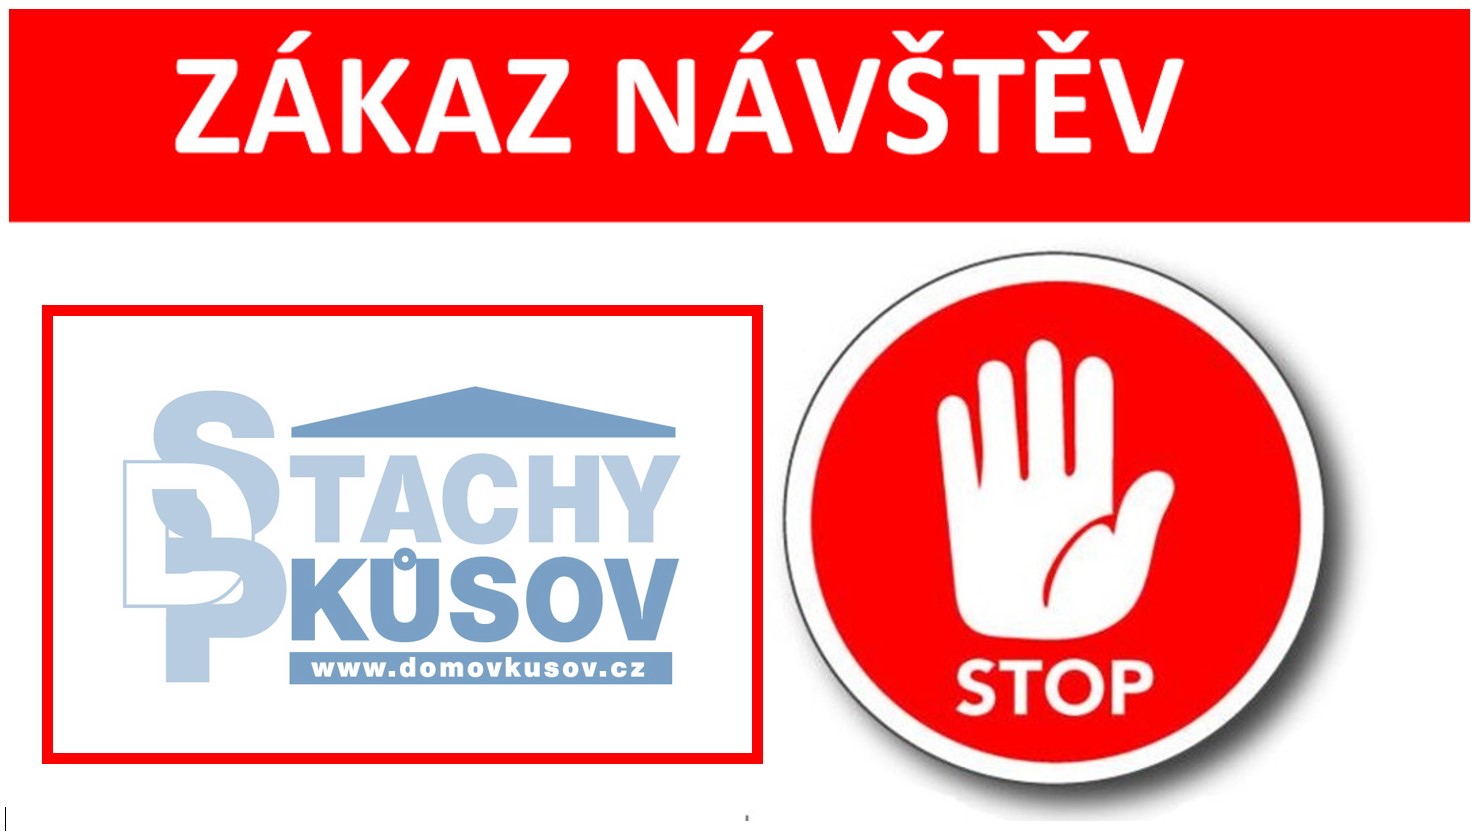 Zakaz navstev DPS Stachy-Kusov[1].jpg